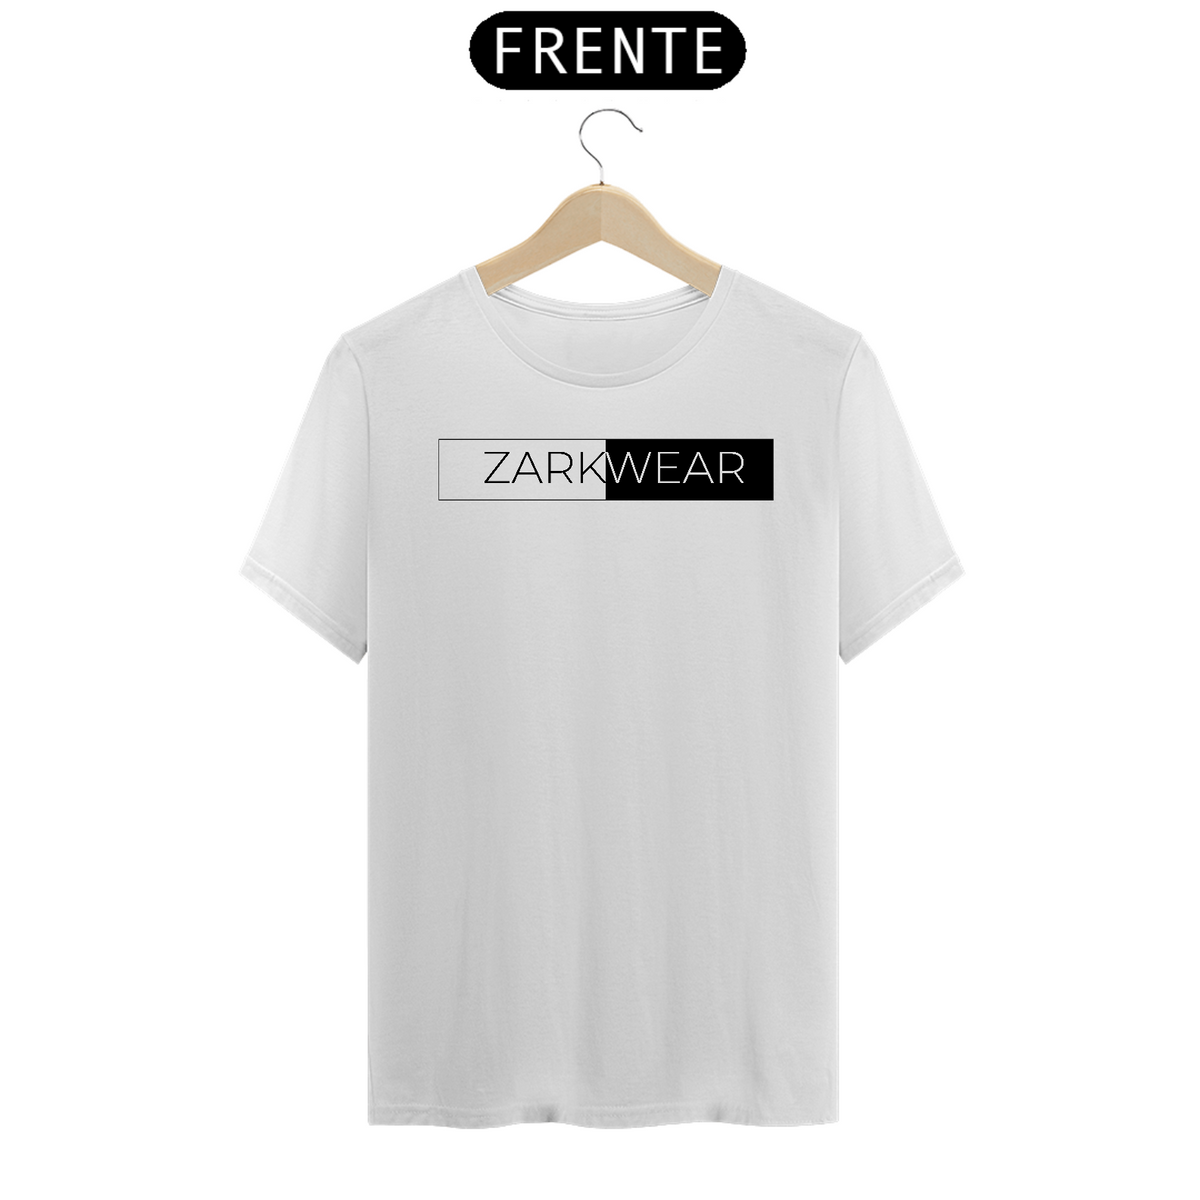 Nome do produto: T-Shirt Day One Zark Wear (Black and White)